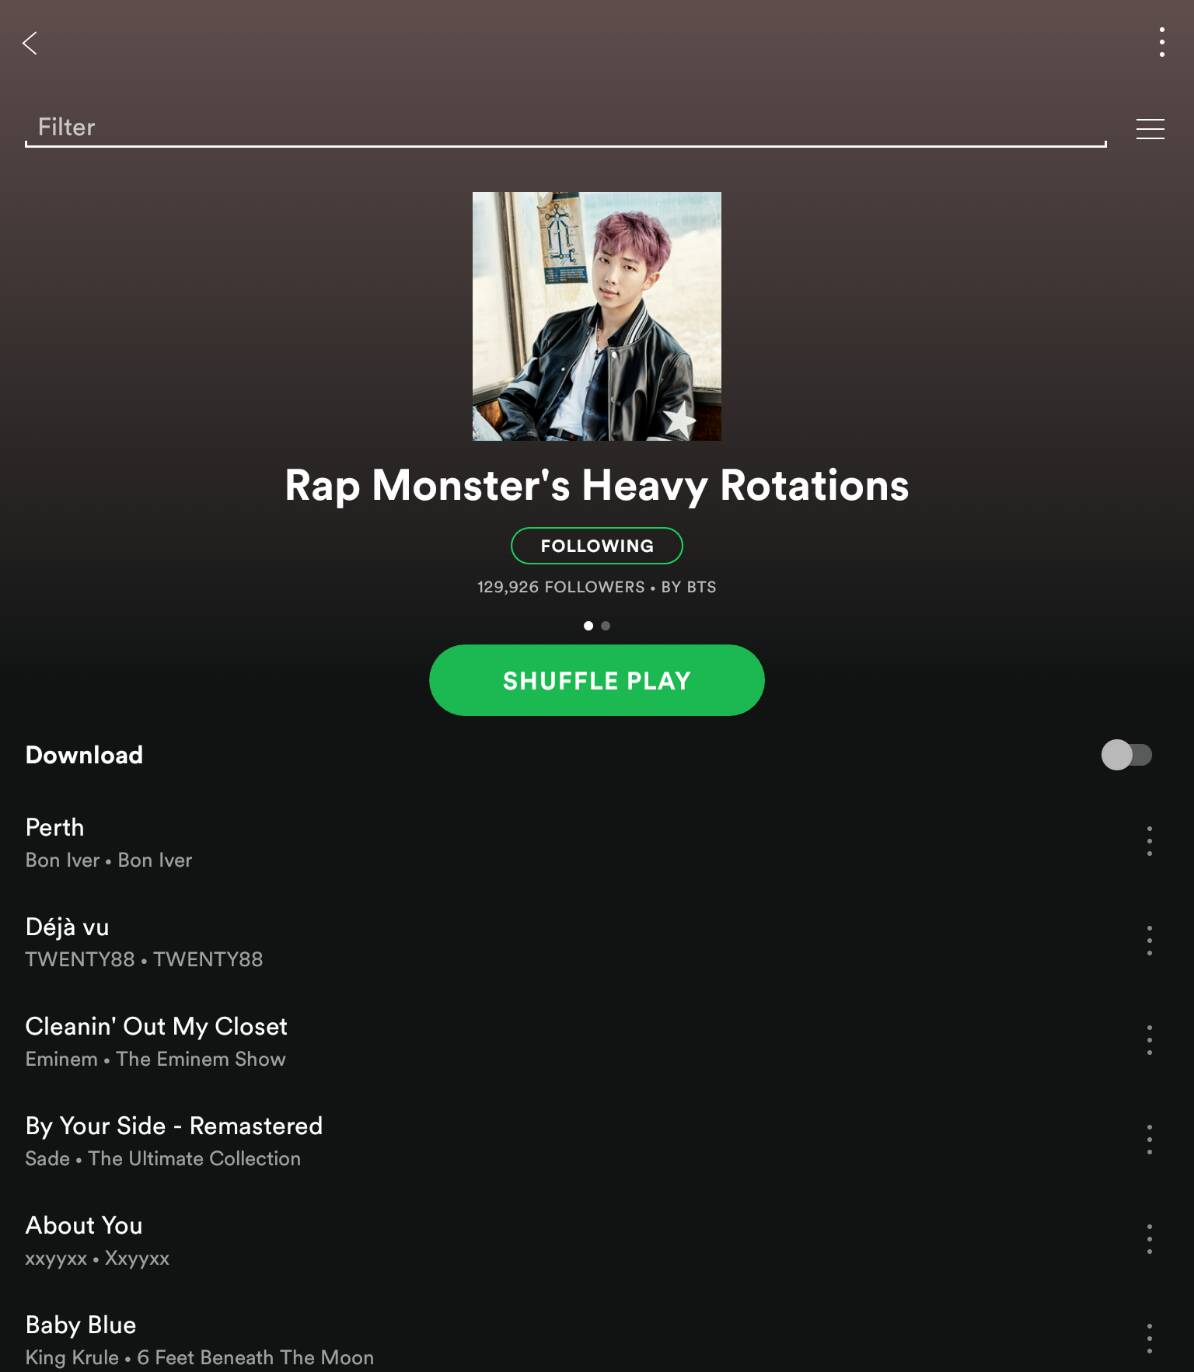 [Link] BTS Playlist on Spotify.